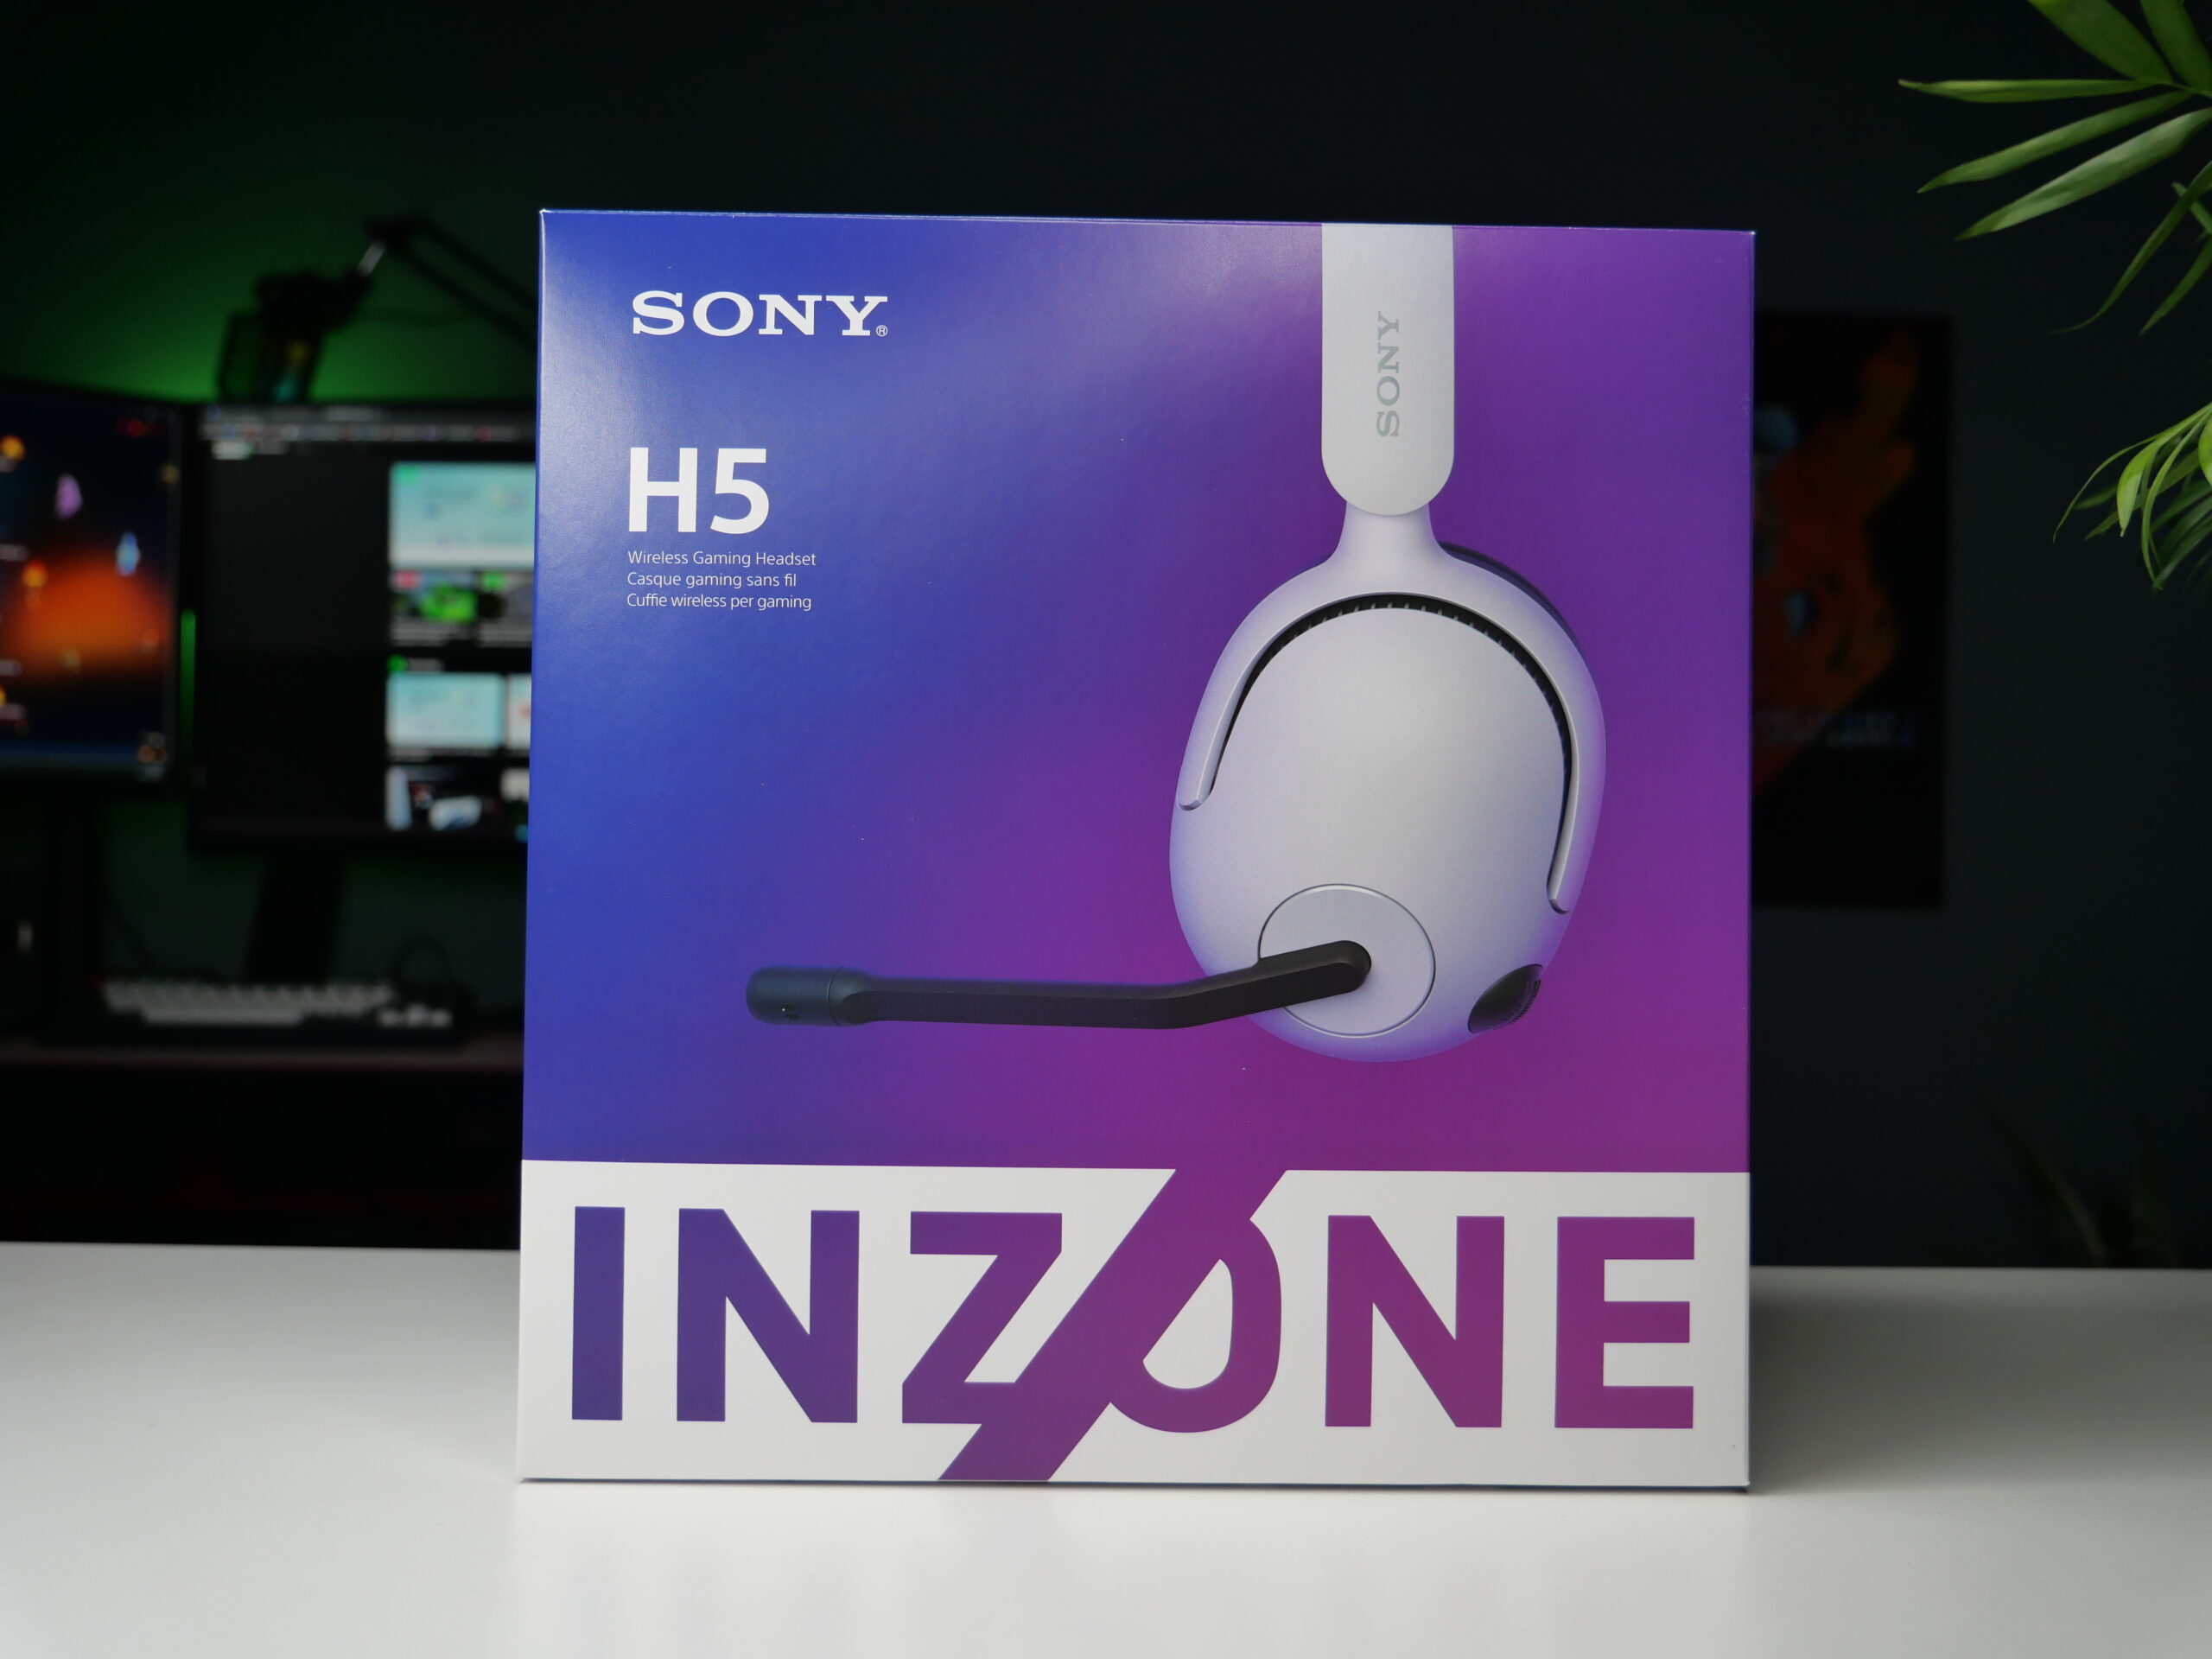 Opakowanie bezprzewodowych słuchawek gamingowych Sony INZONE H5 stoi na biurku, w tle widoczne są monitory komputerowe i część rośliny doniczkowej.